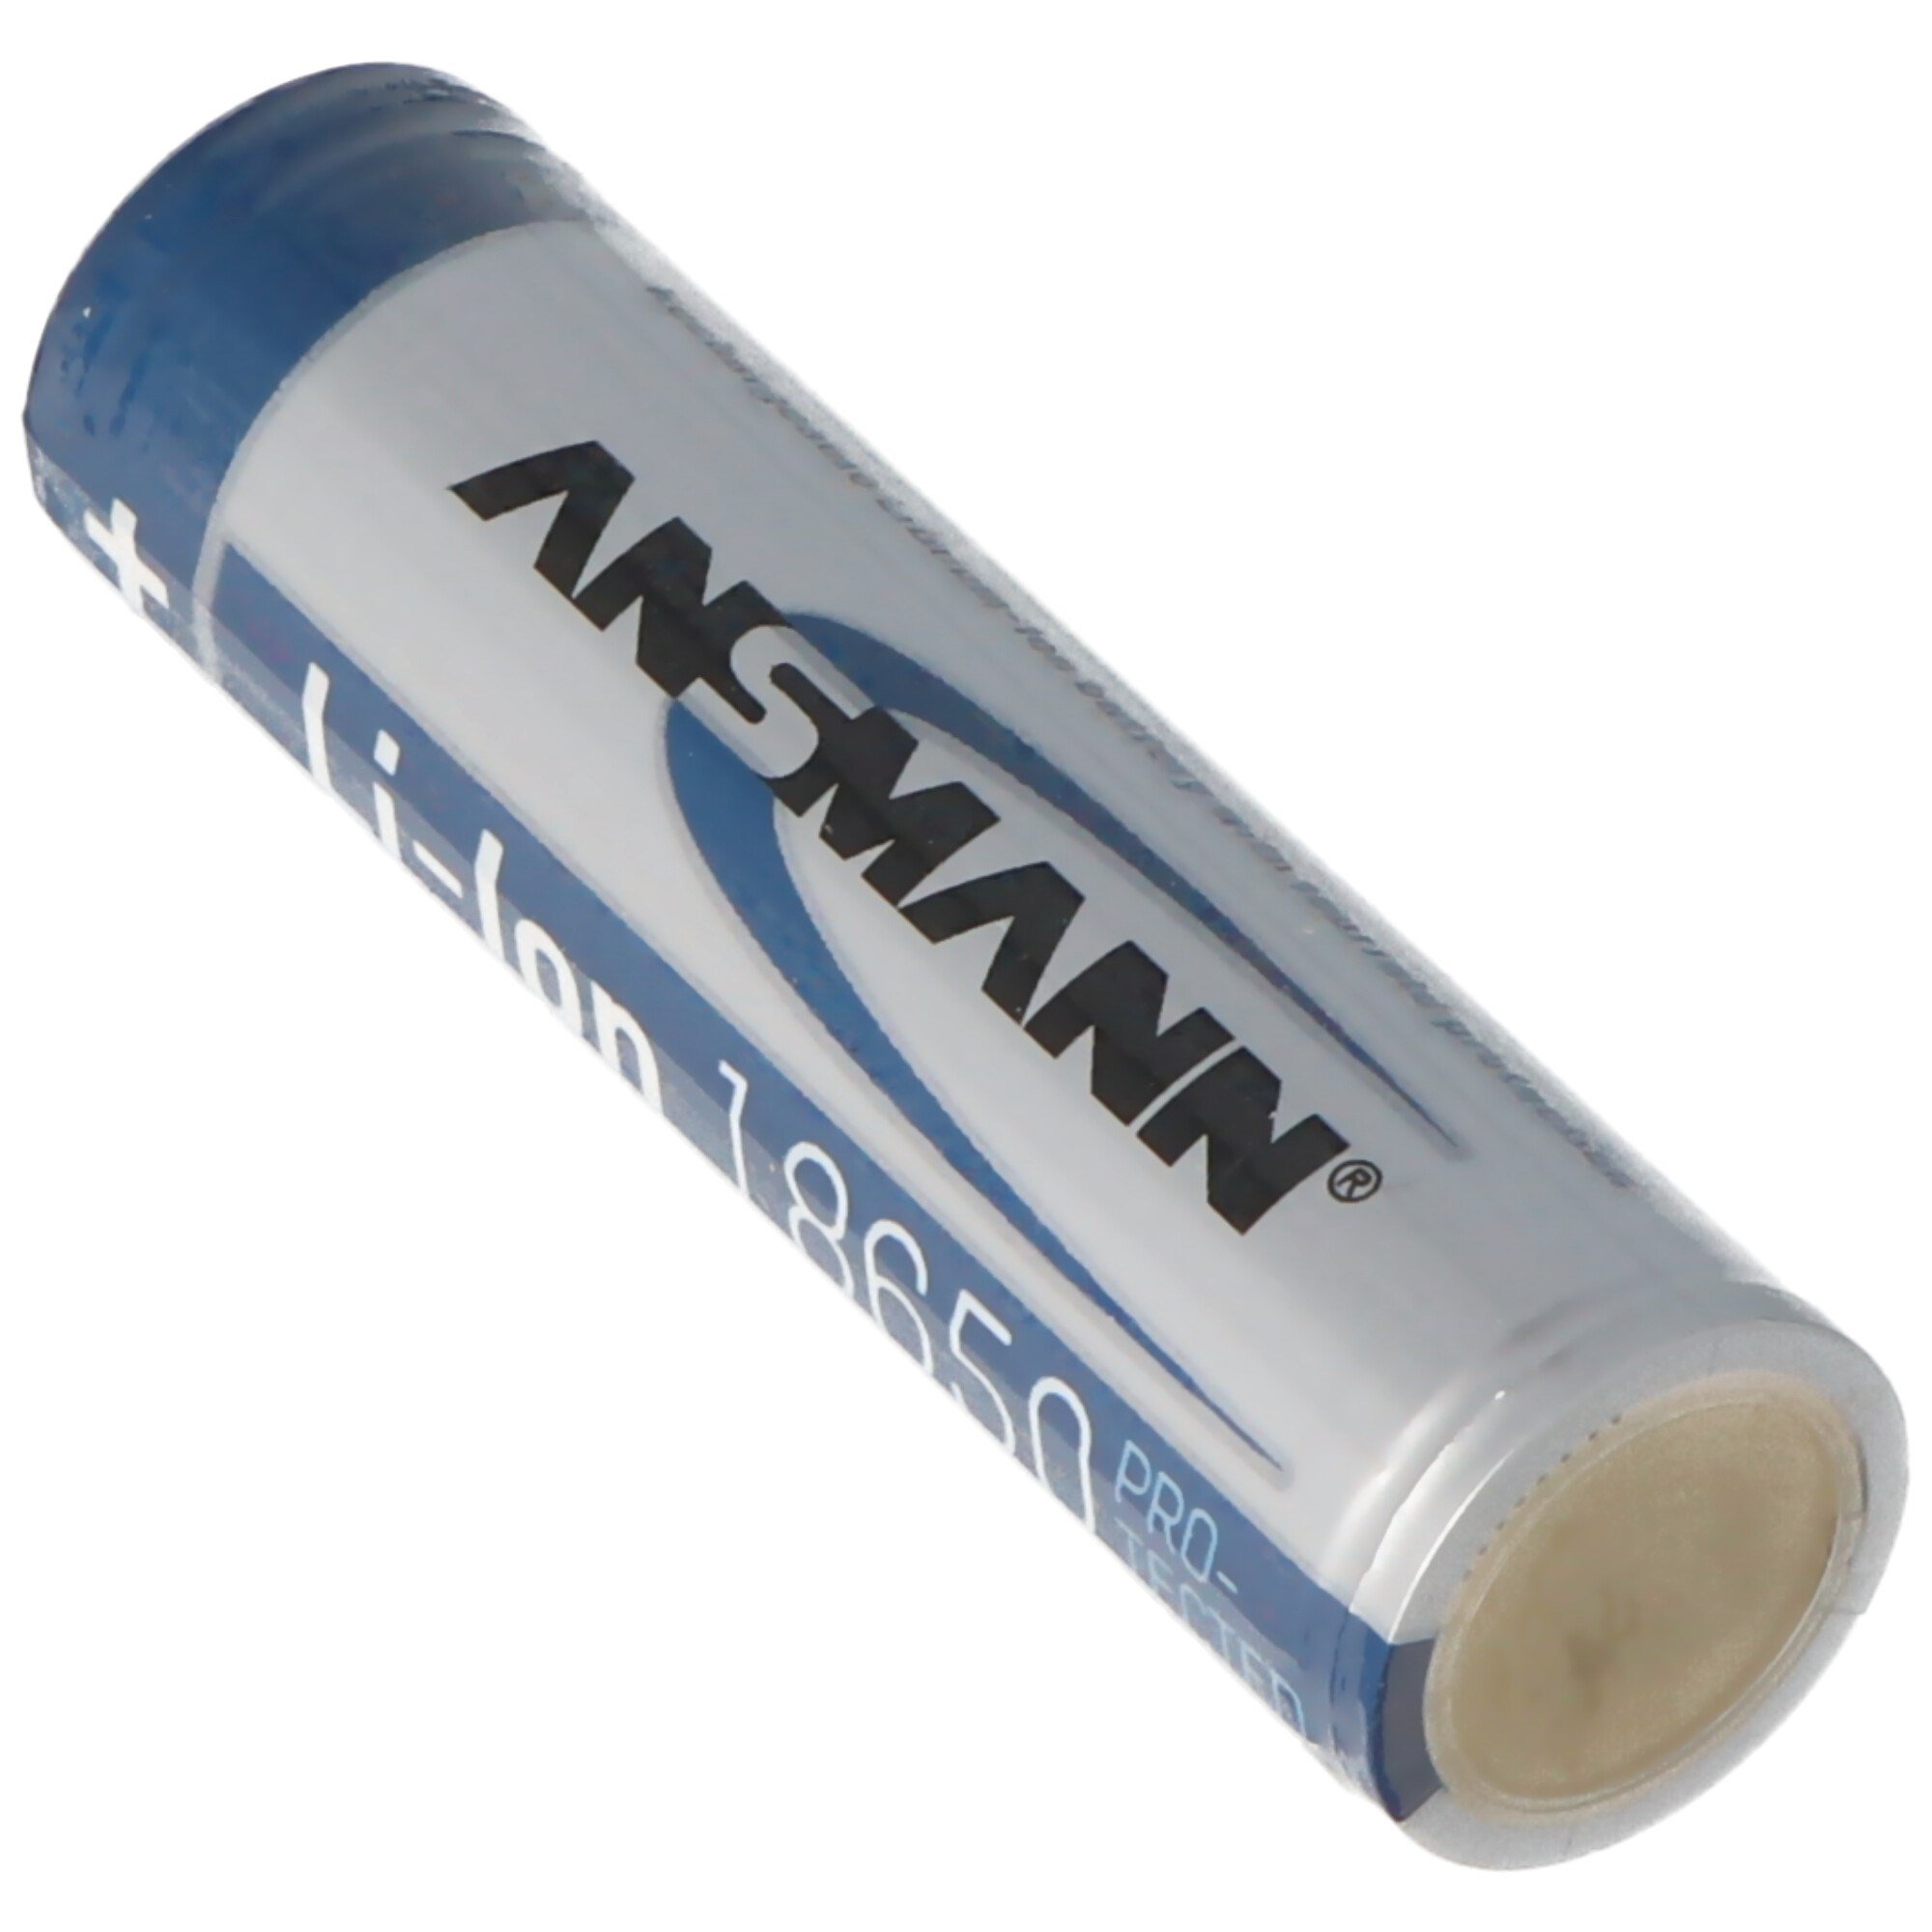 Ansmann Li-Ion pil 18650 lityum-iyon pil 3.6 volt 2600mAh, 9.36Wh, emniyet  devresi ile